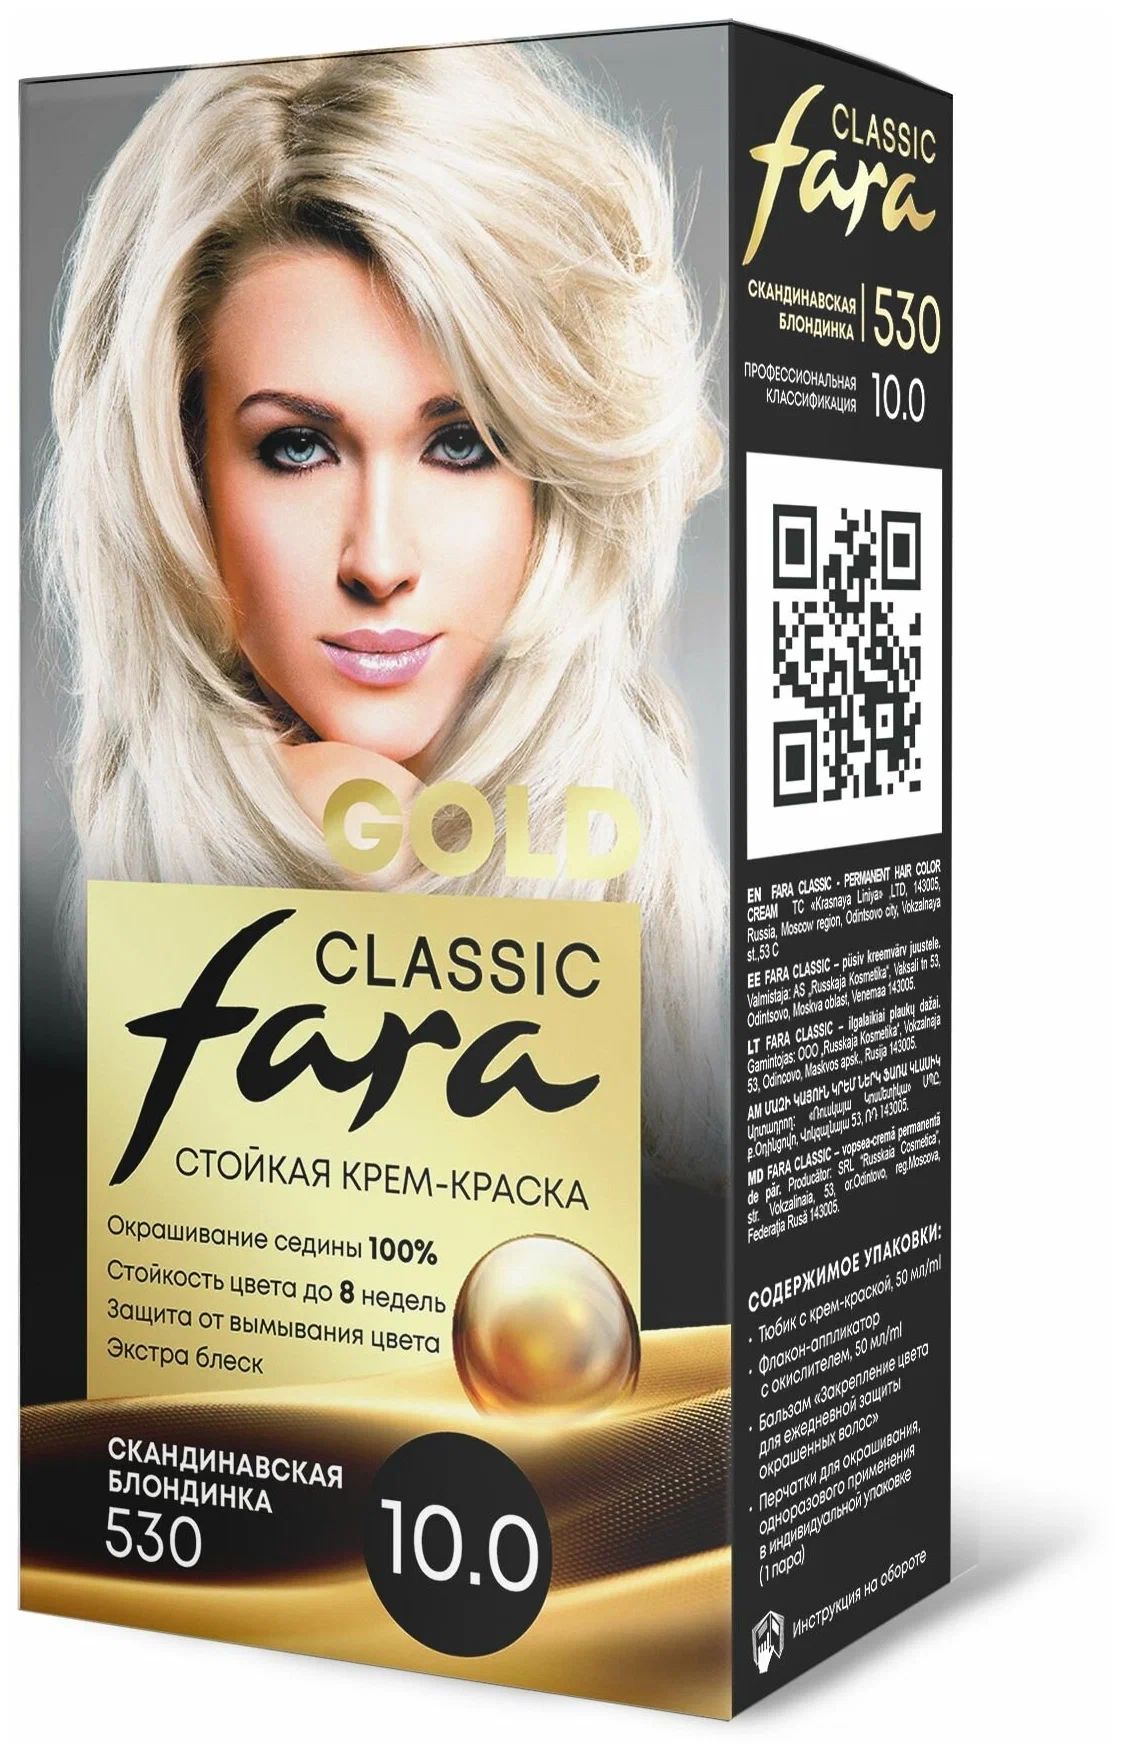 Крем-краска для волос Fara Classic Gold 530 скандинавская блондинка 10.0, 140 г расческа для волос freshman мужская collection carbon